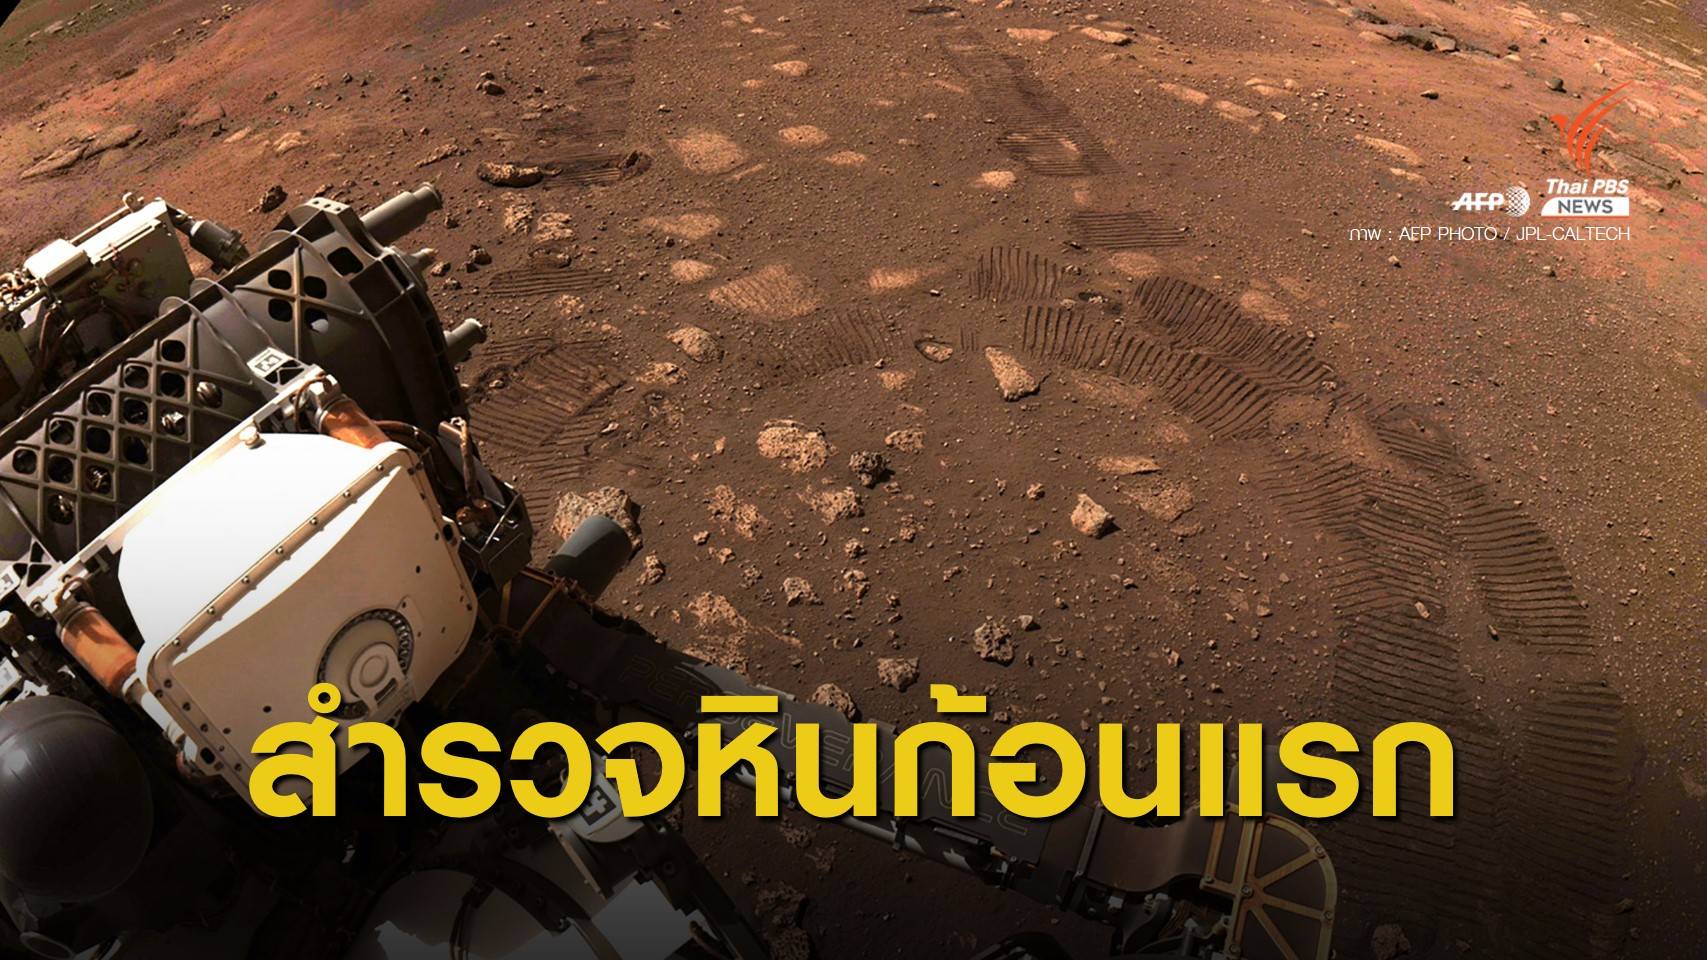 ใกล้เริ่มแล้ว! เพอร์เซเวียแรนส์สำรวจ “มาอัส” หินดาวอังคารก้อนแรก